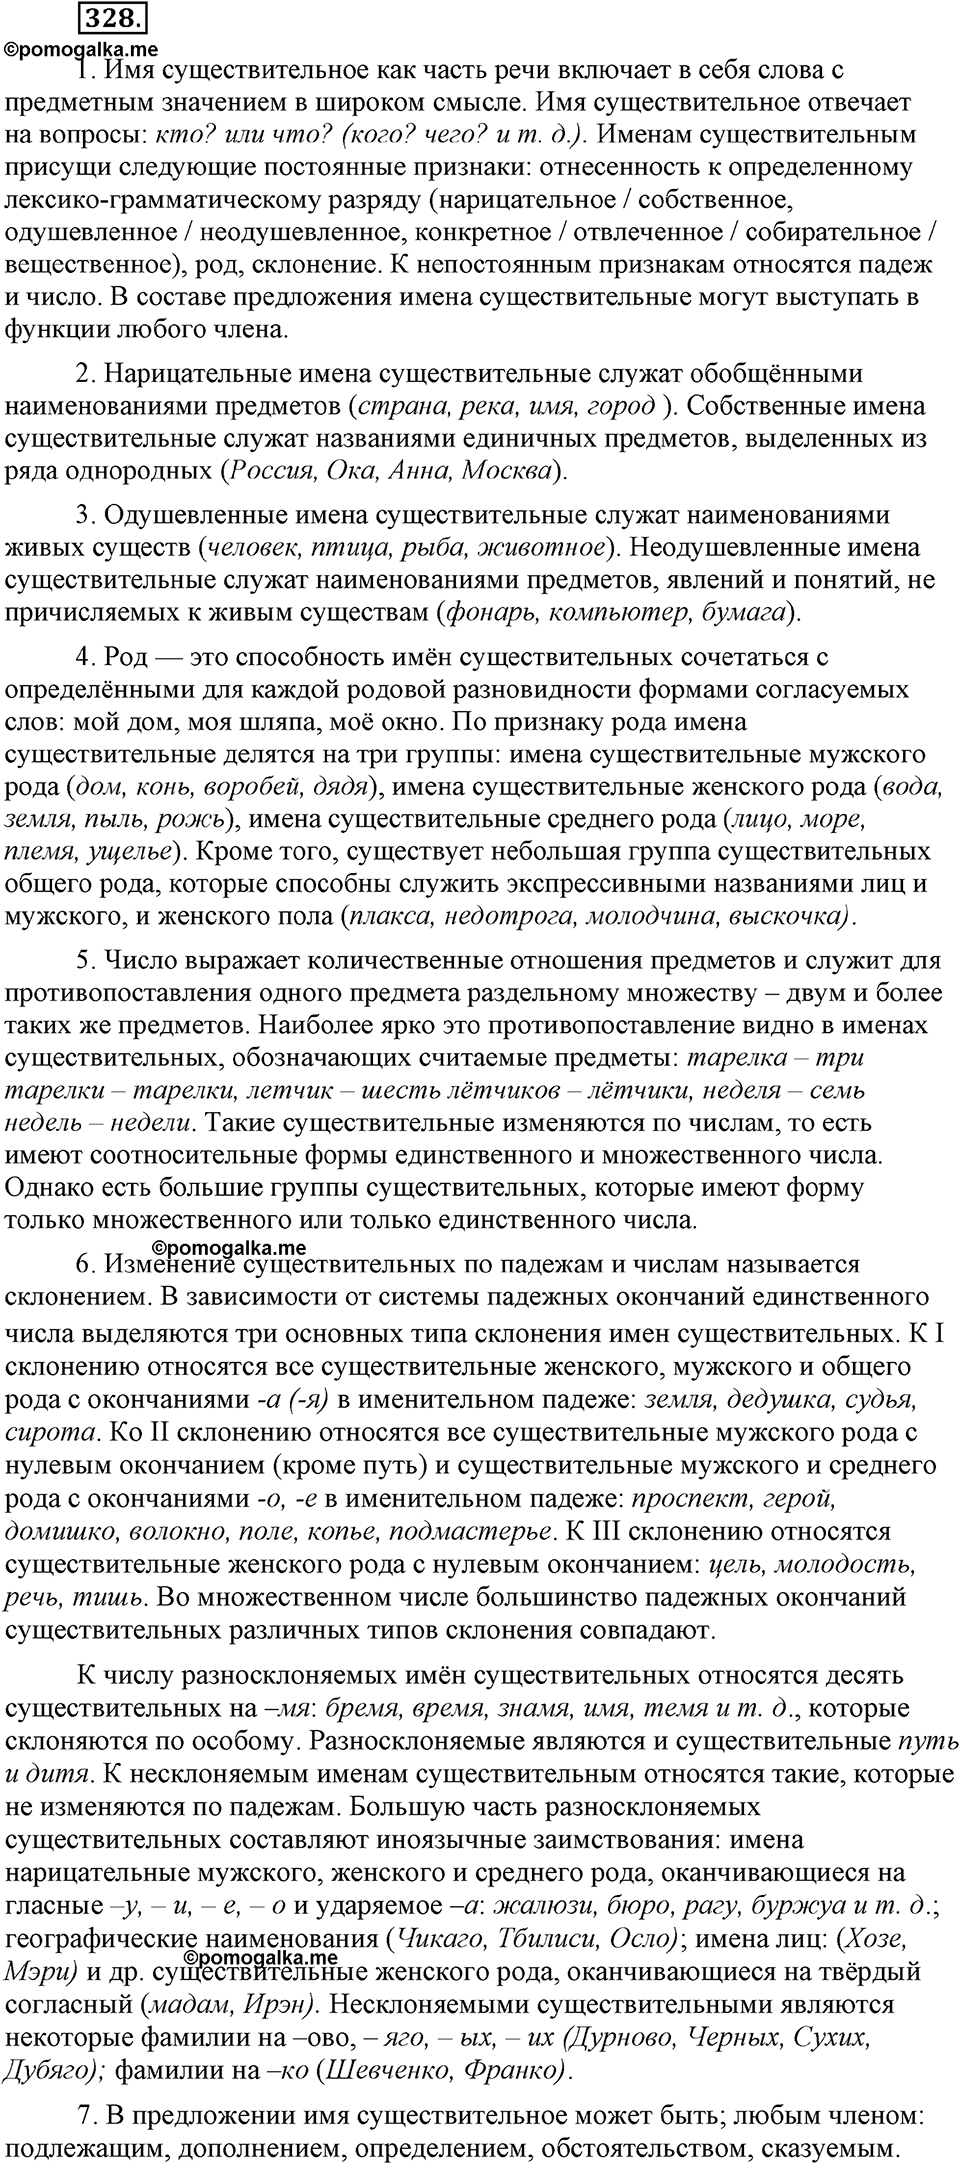 страница 151 номер 328 русский язык 9 класс Бархударов 2011 год